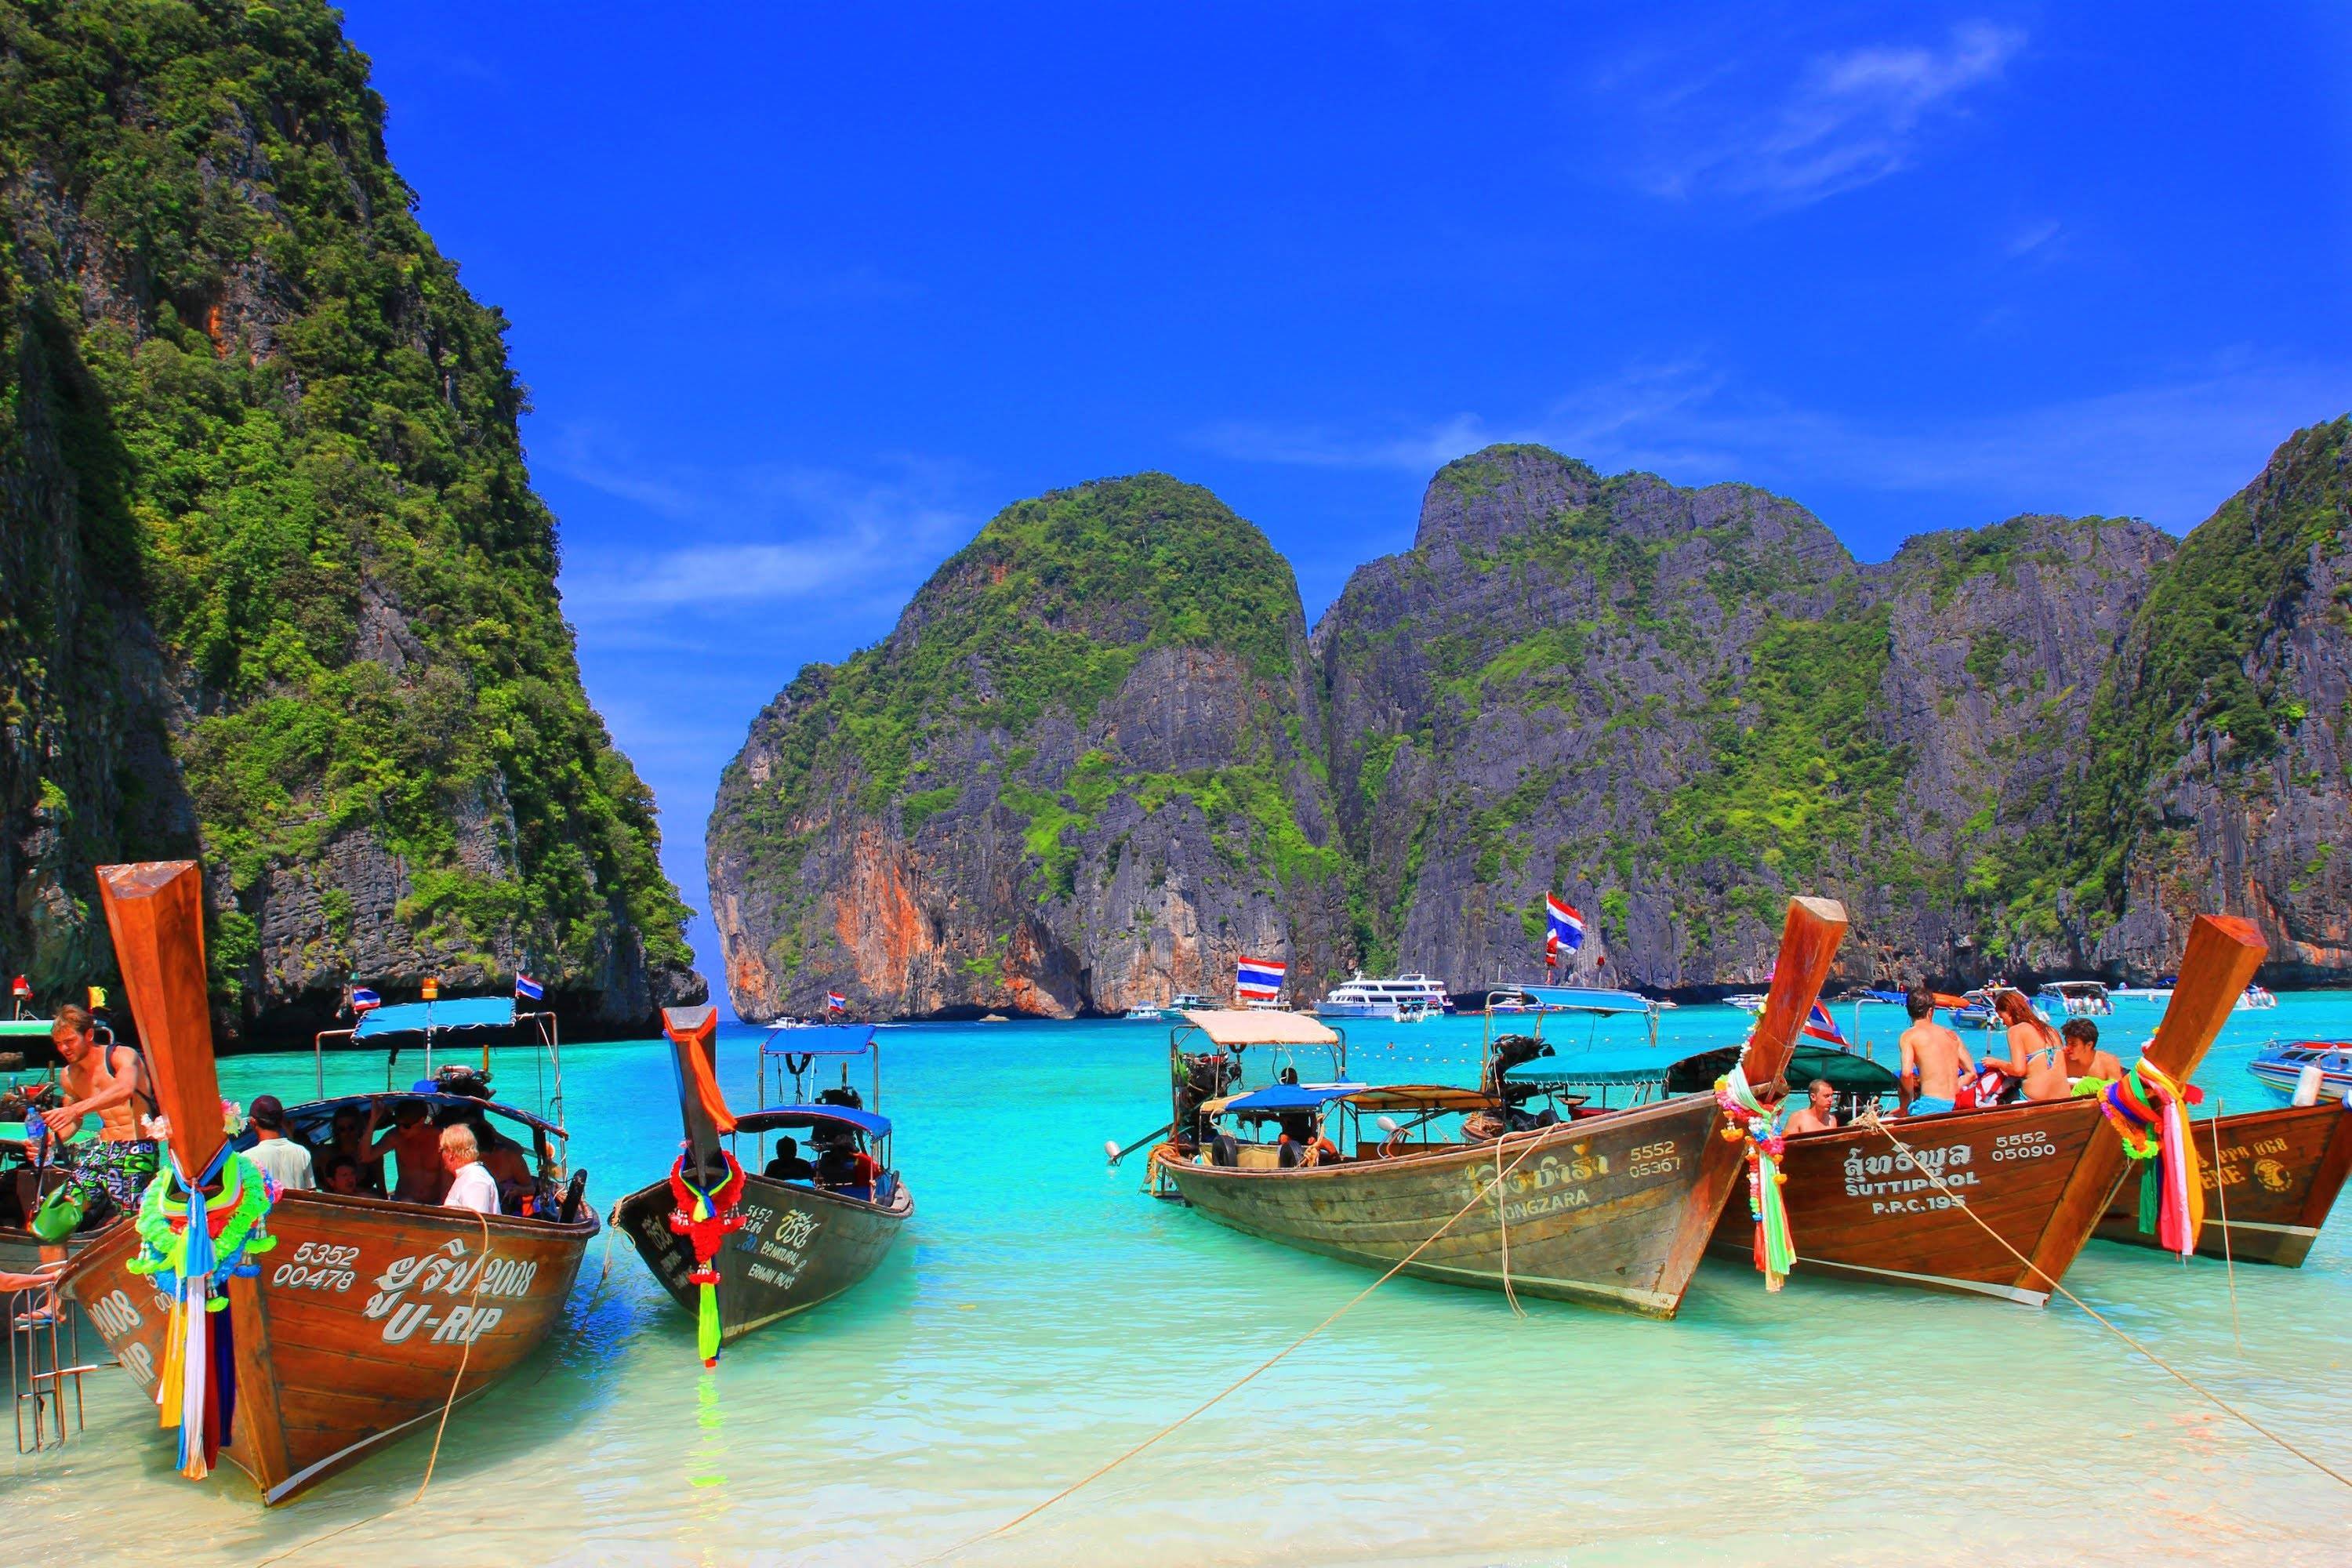 Куда лучше поехать отдохнуть - таиланд или вьетнам